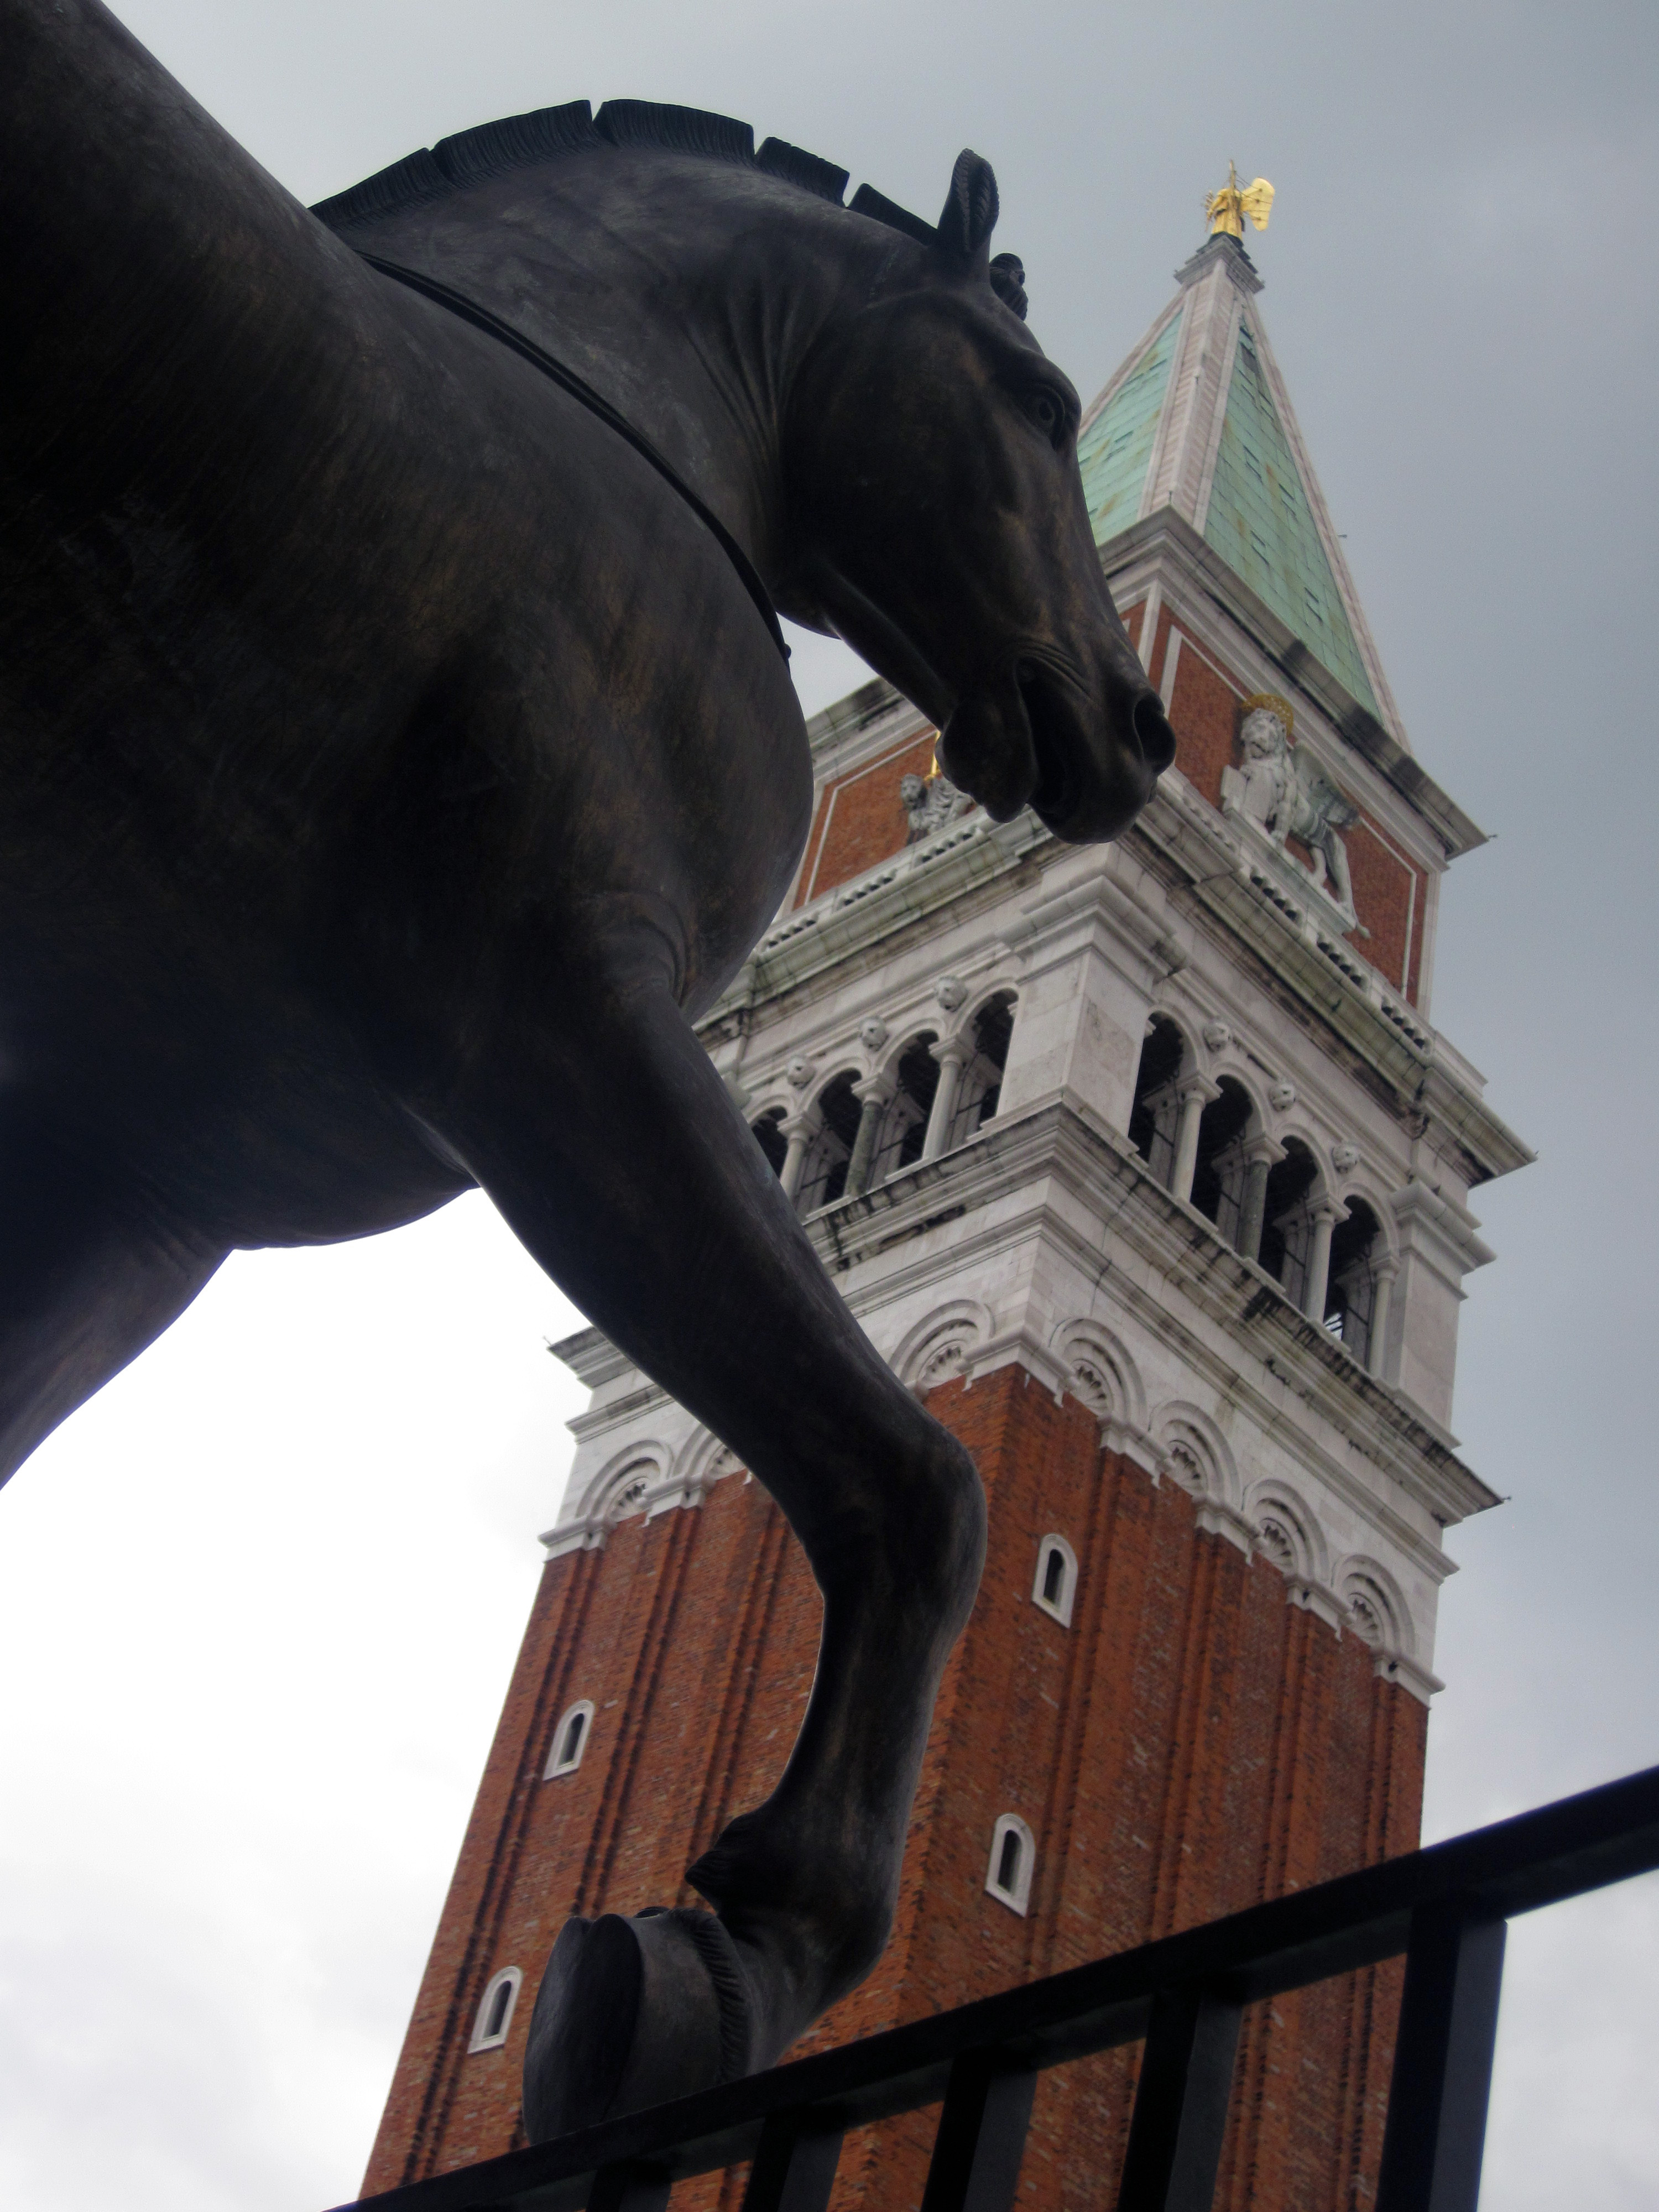 Uno de los caballos de San Marcos mira atento hacia la plaza. De fondo, el campanario.